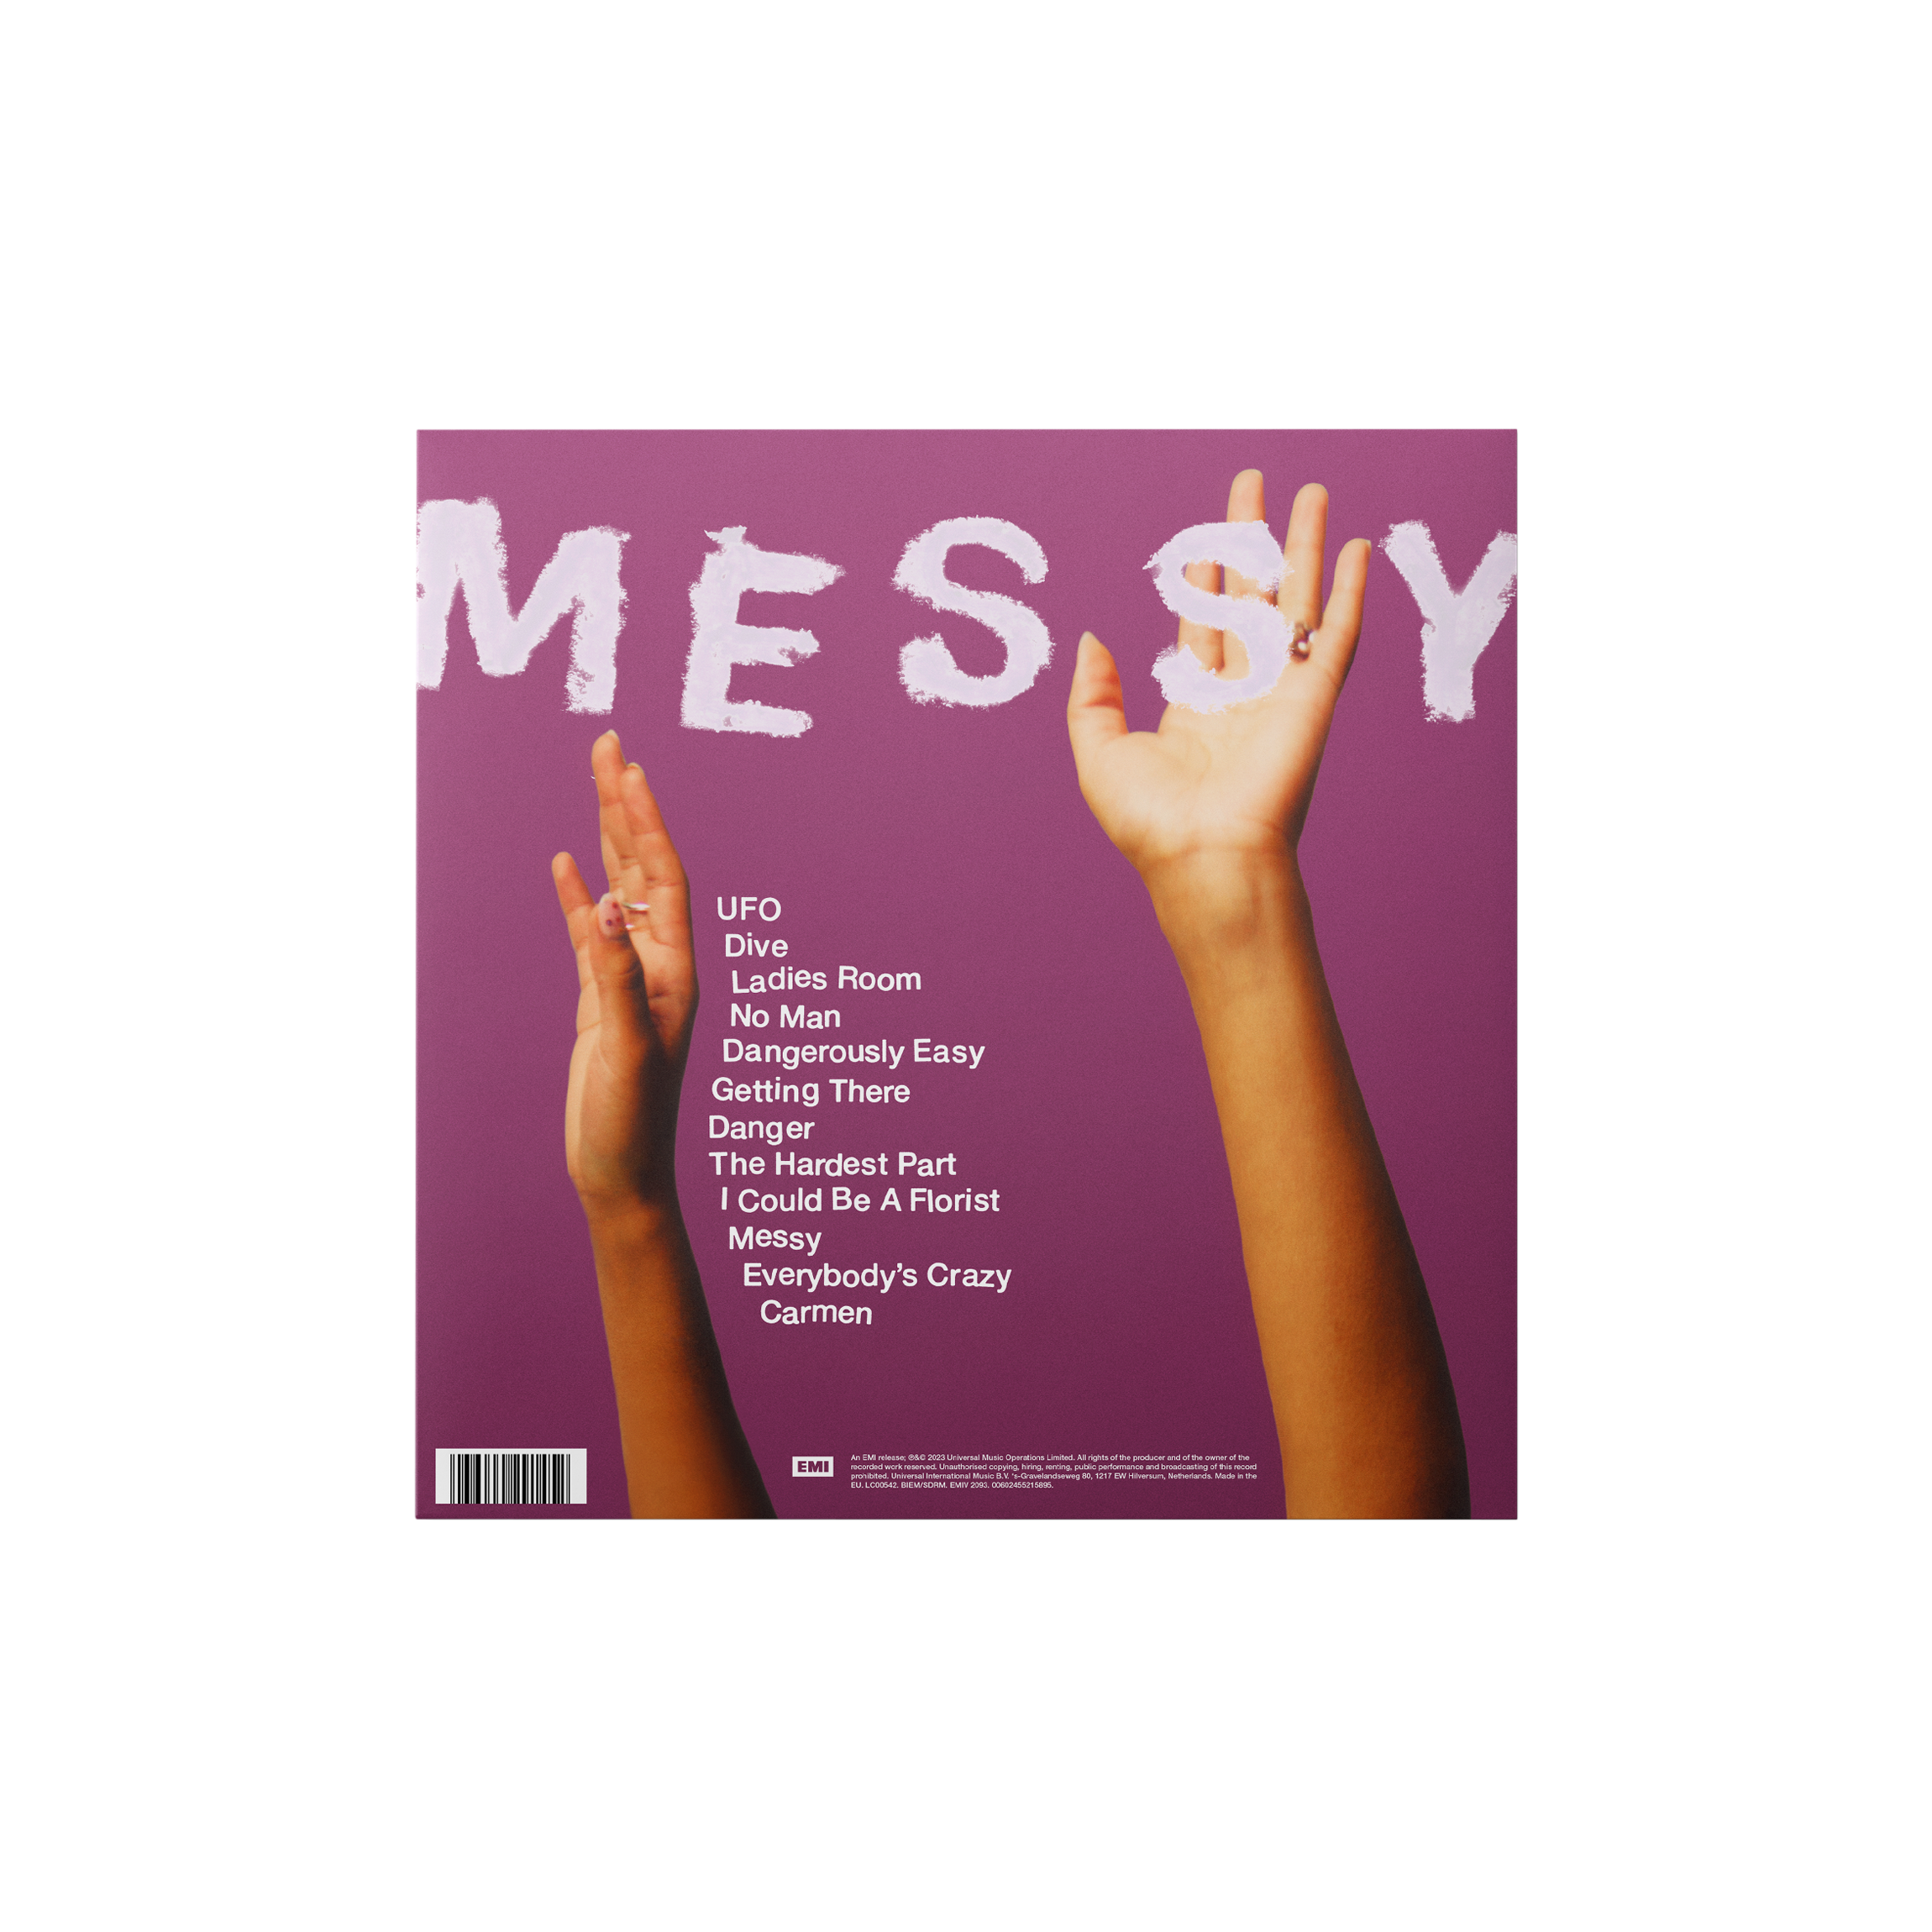 Olivia Dean - Messy: Vinyl LP